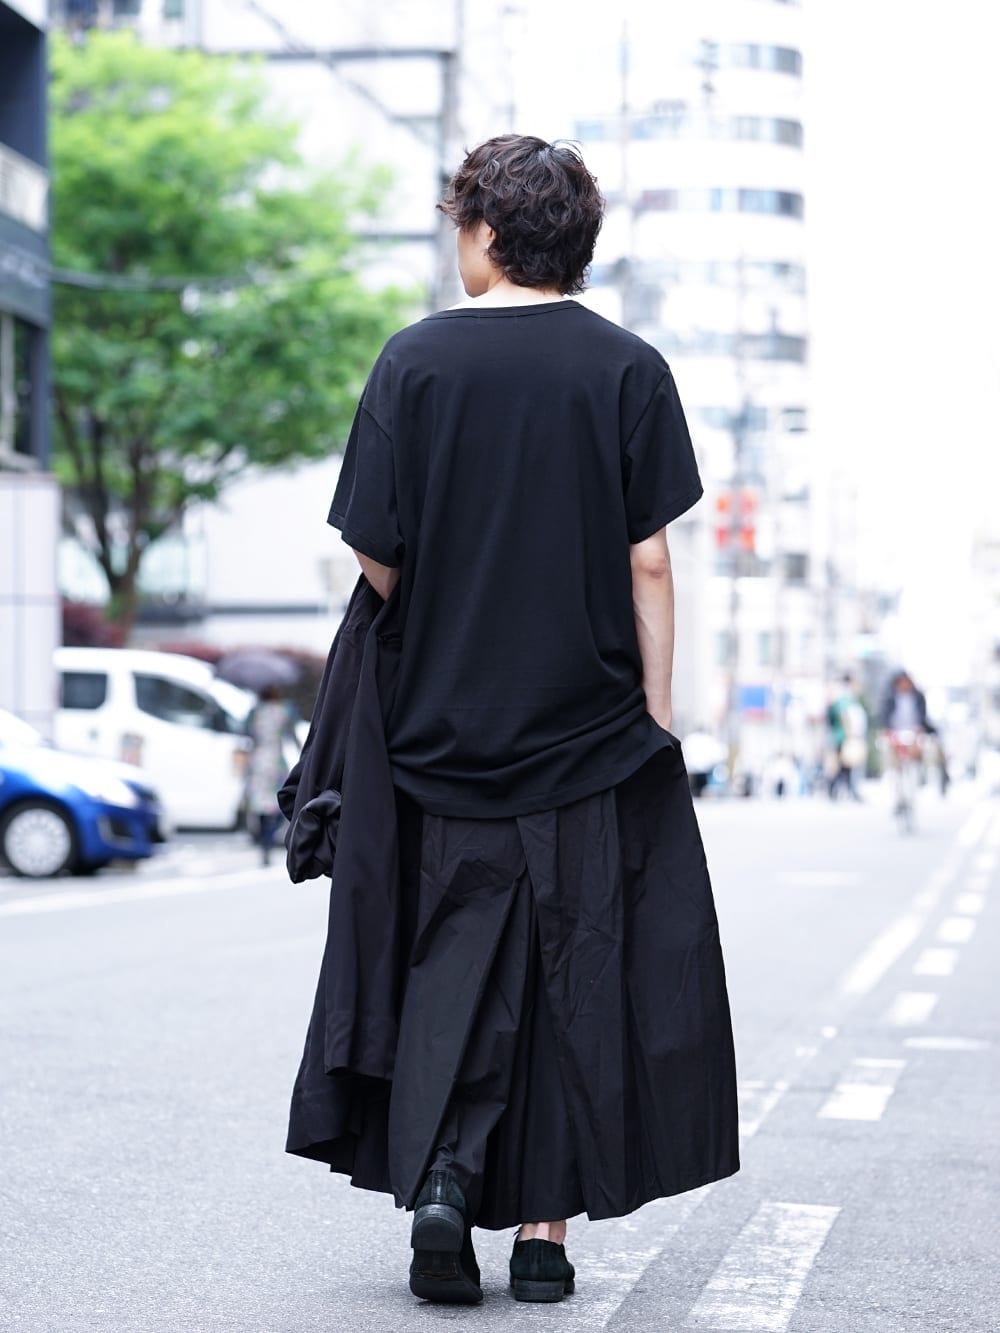 Yohji Yamamoto 19SS HAKAMA Pants 2Way Coordinate - FASCINATE BLOG